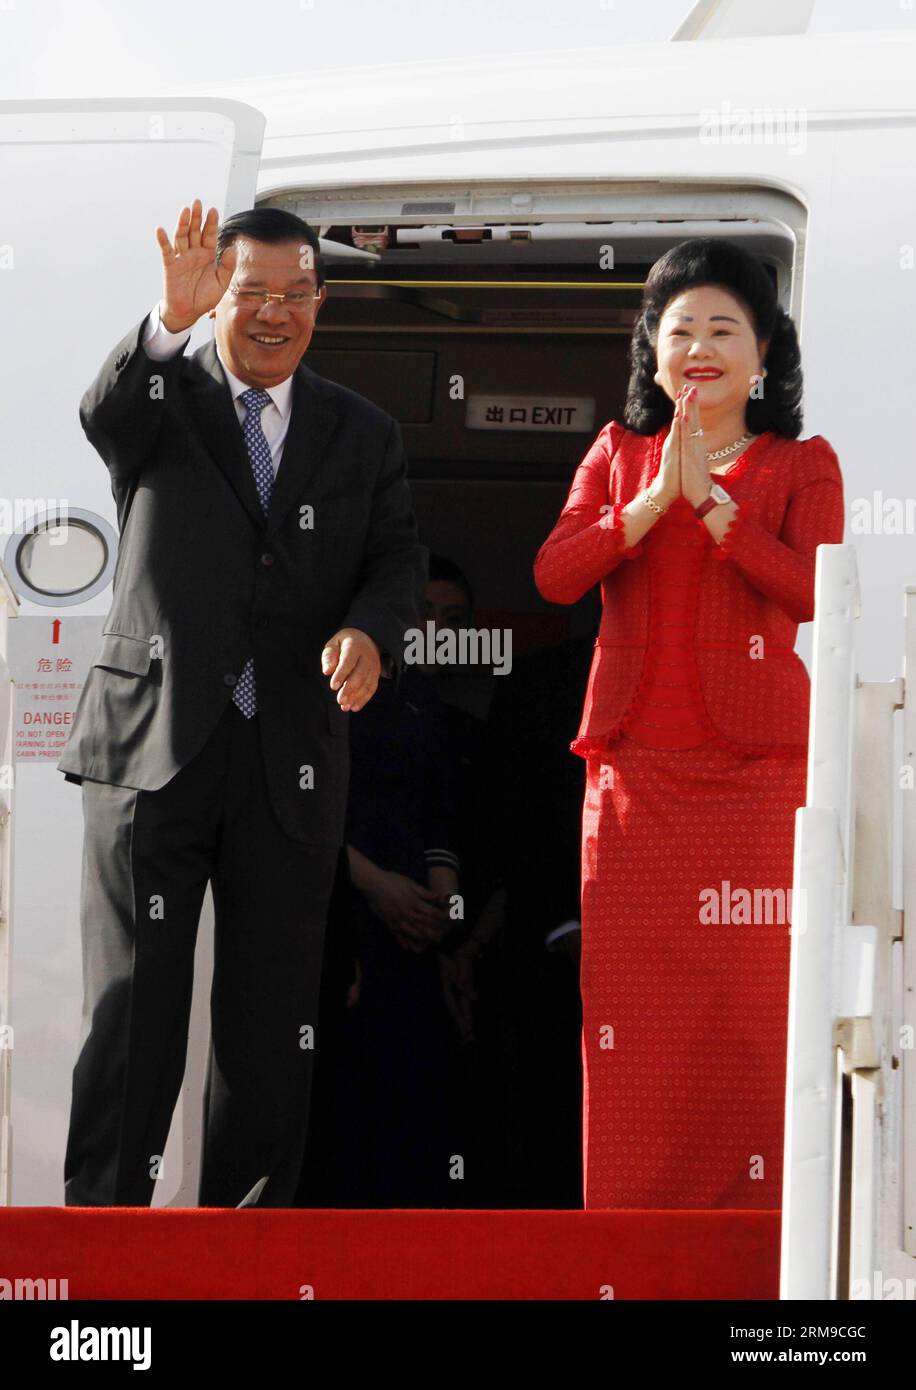 Le Premier ministre cambodgien Hun Sen (à gauche) et son épouse Bun Rany font un geste à l’aéroport international de Phnom Penh à Phnom Penh le 18 mai 2014. Hun Sen s’est rendu dimanche matin à Shanghai, dans l’est de la Chine, pour assister au 4e Sommet de la Conférence sur l’interaction et les mesures de confiance en Asie (CICA), qui se tiendra mardi et mercredi. (Xinhua/Sovannara) CAMBODGE-PM-CHINE-SHANGHAI-CICA PUBLICATIONxNOTxINxCHN Banque D'Images